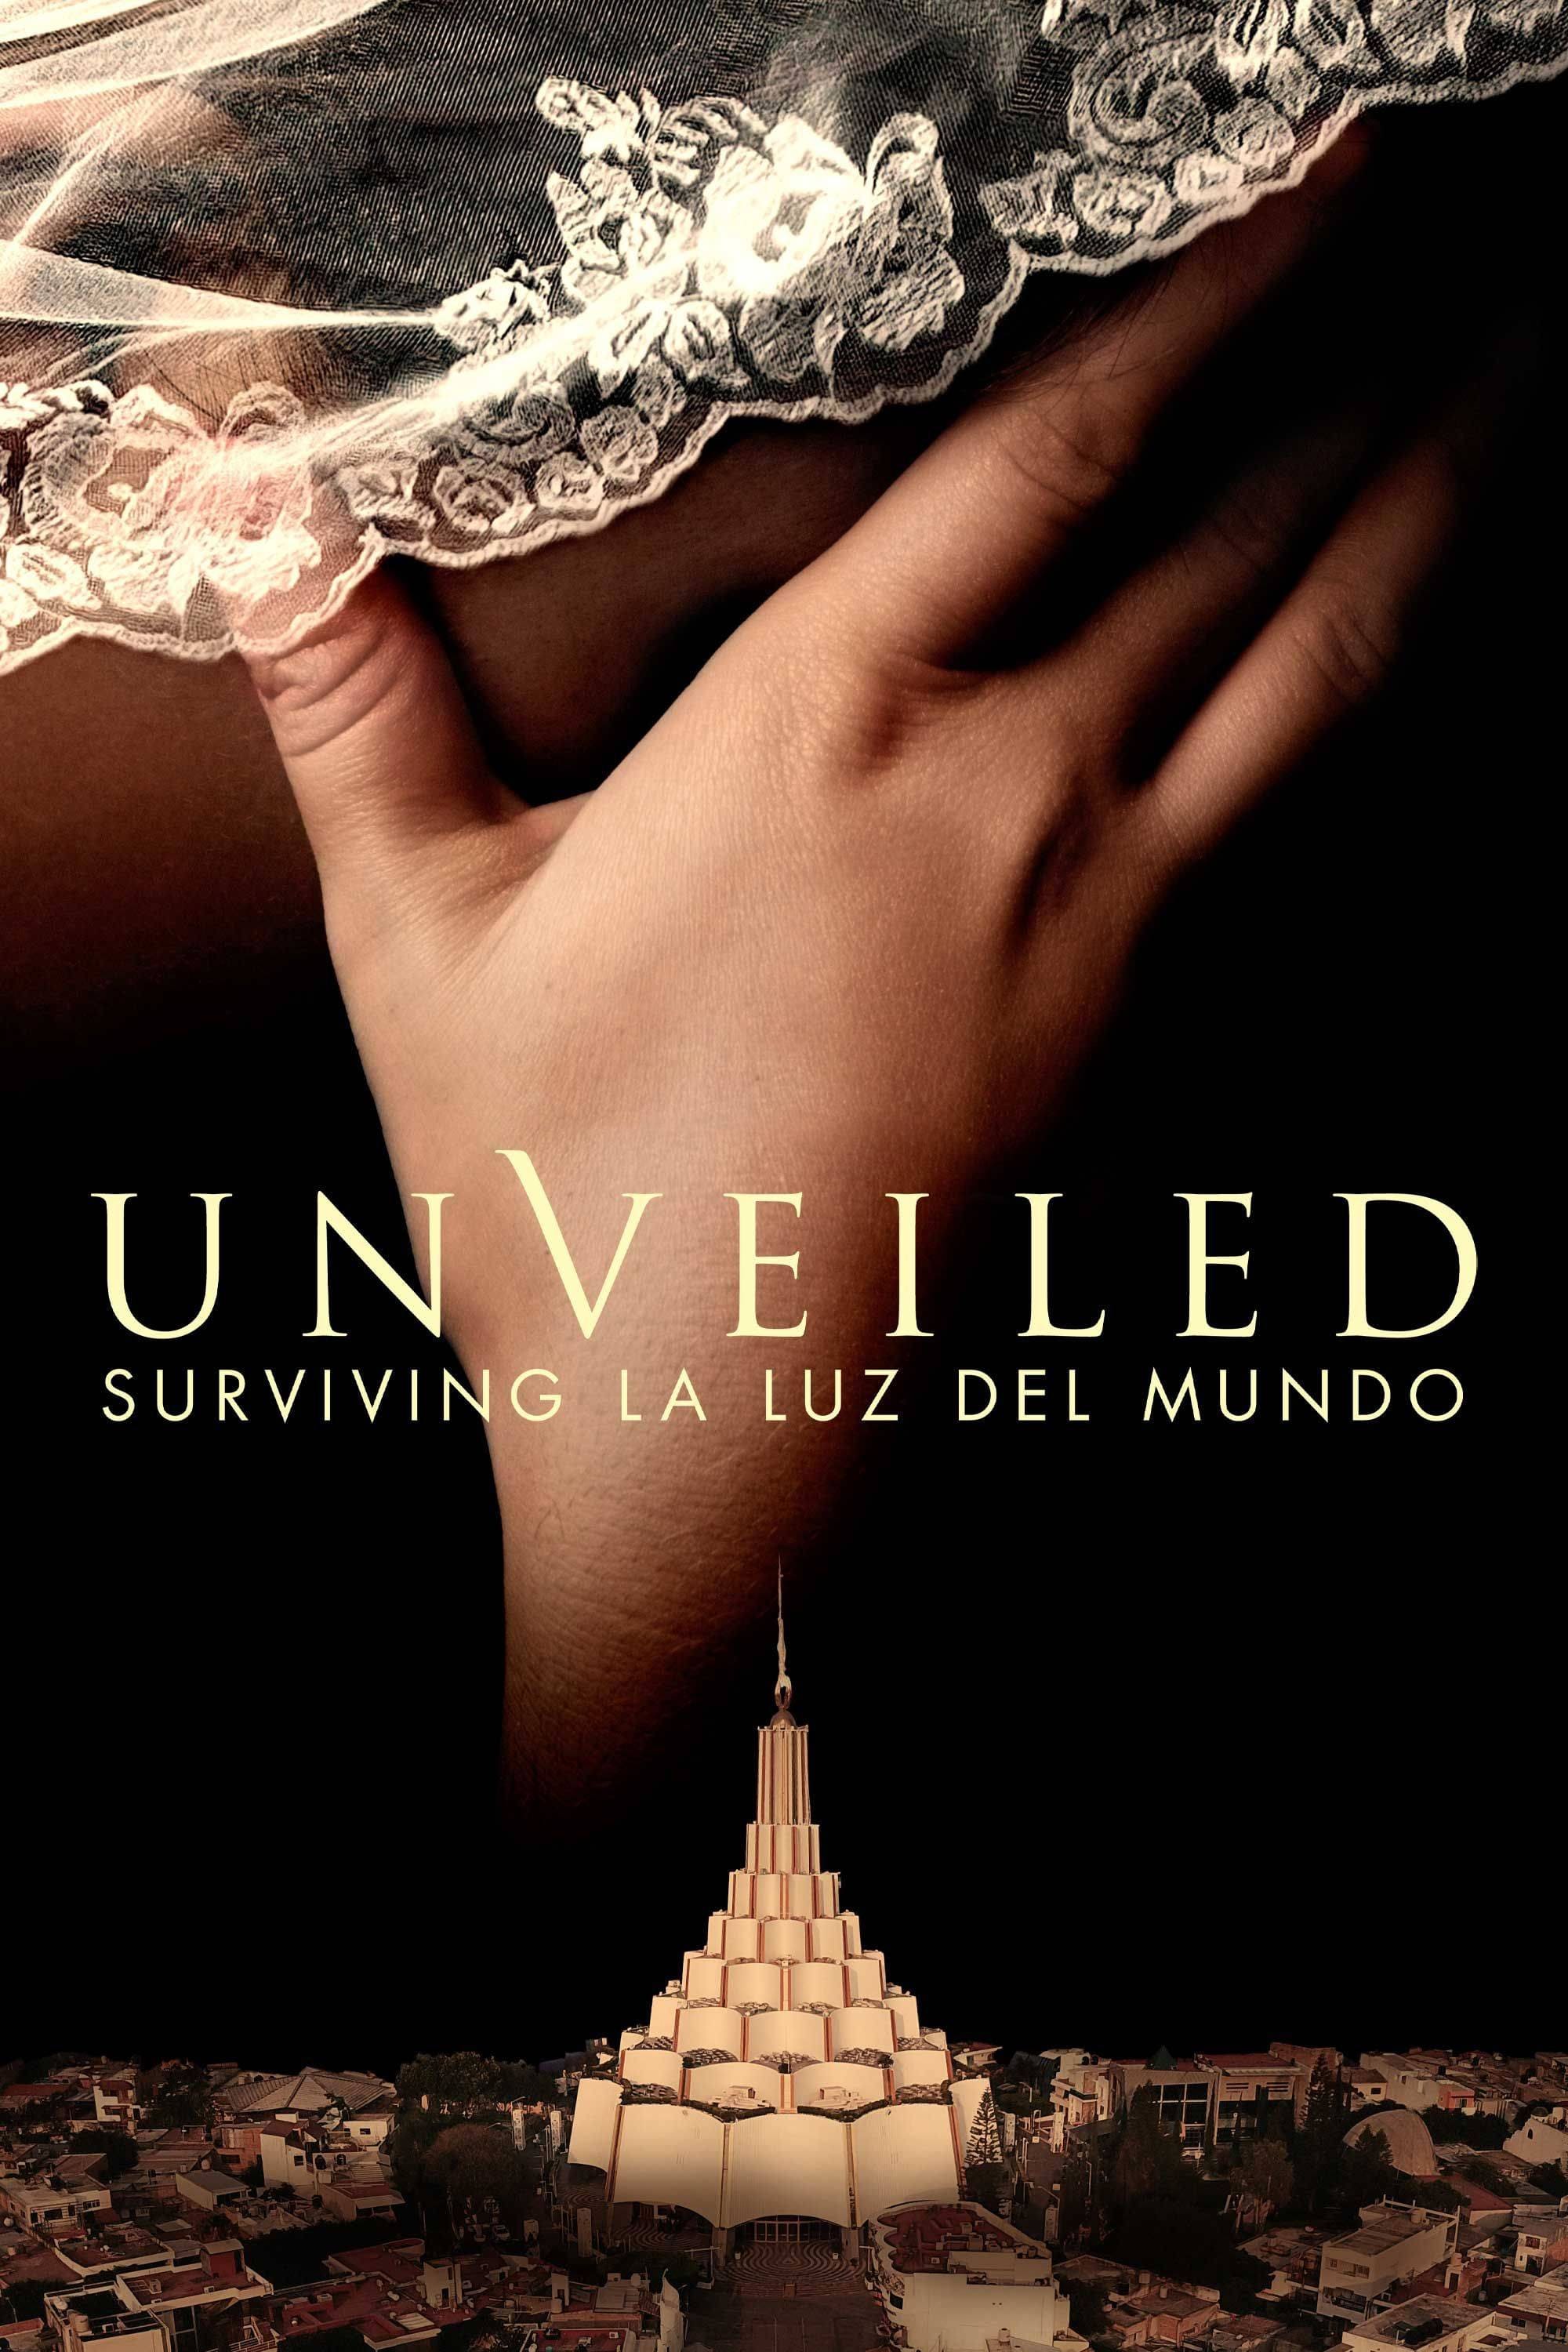 Unveiled: Surviving La Luz del Mundo TV Shows About Sexual Abuse